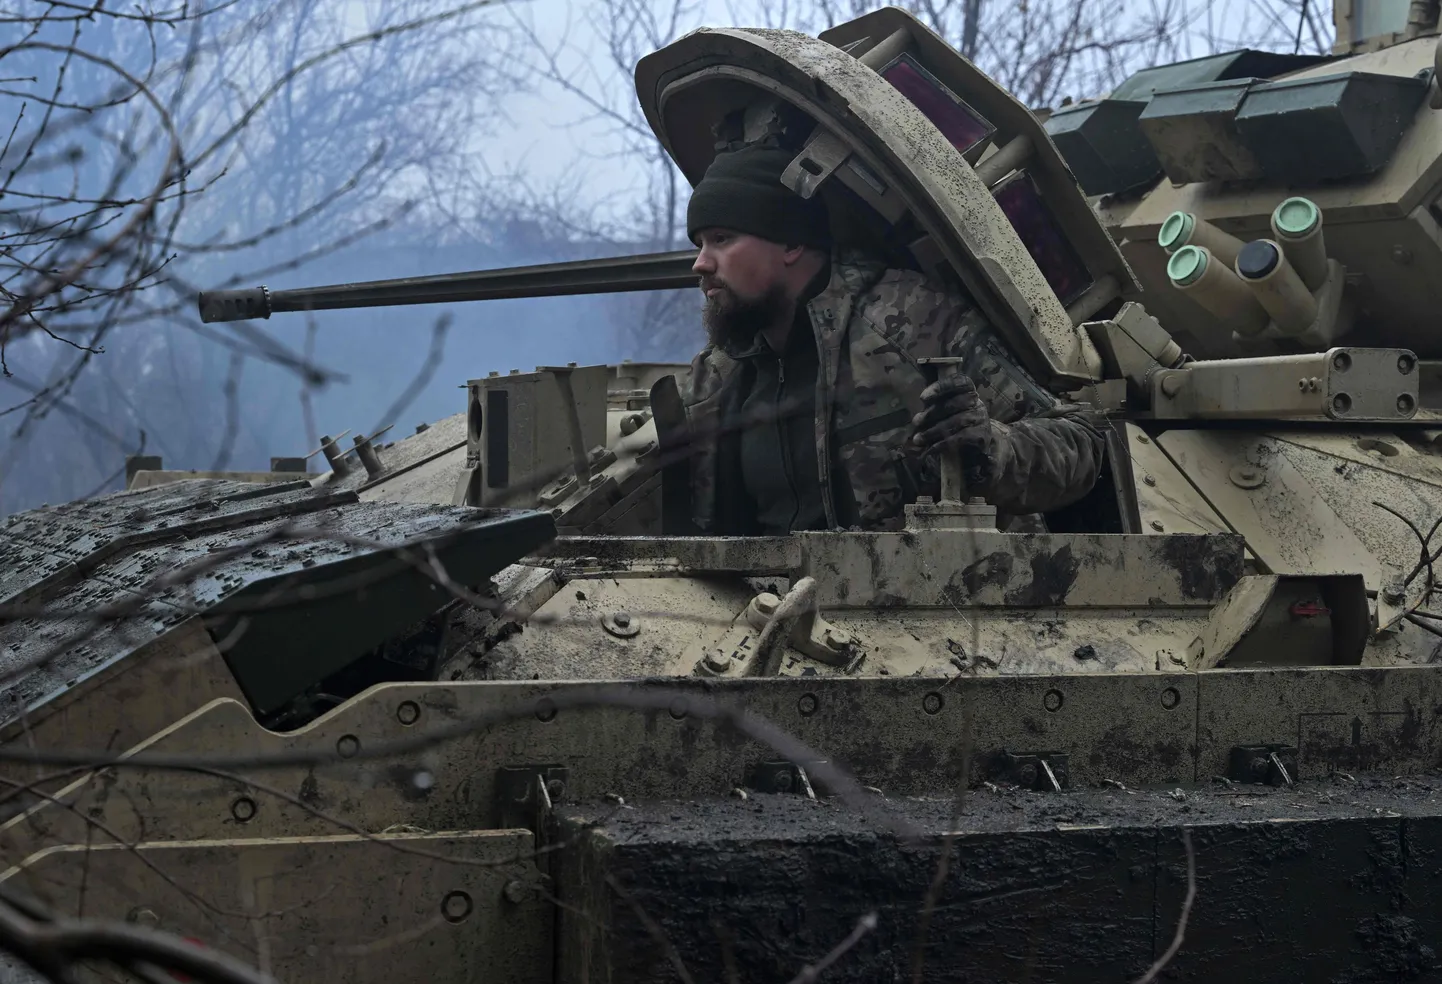 Ukraina 47. mehaniseeritud jalaväebrigaad valmistub Bradleyga lahinguks. Just see brigaad Solovjove küla lähedal Vene soomustrasportööri hävitaski.